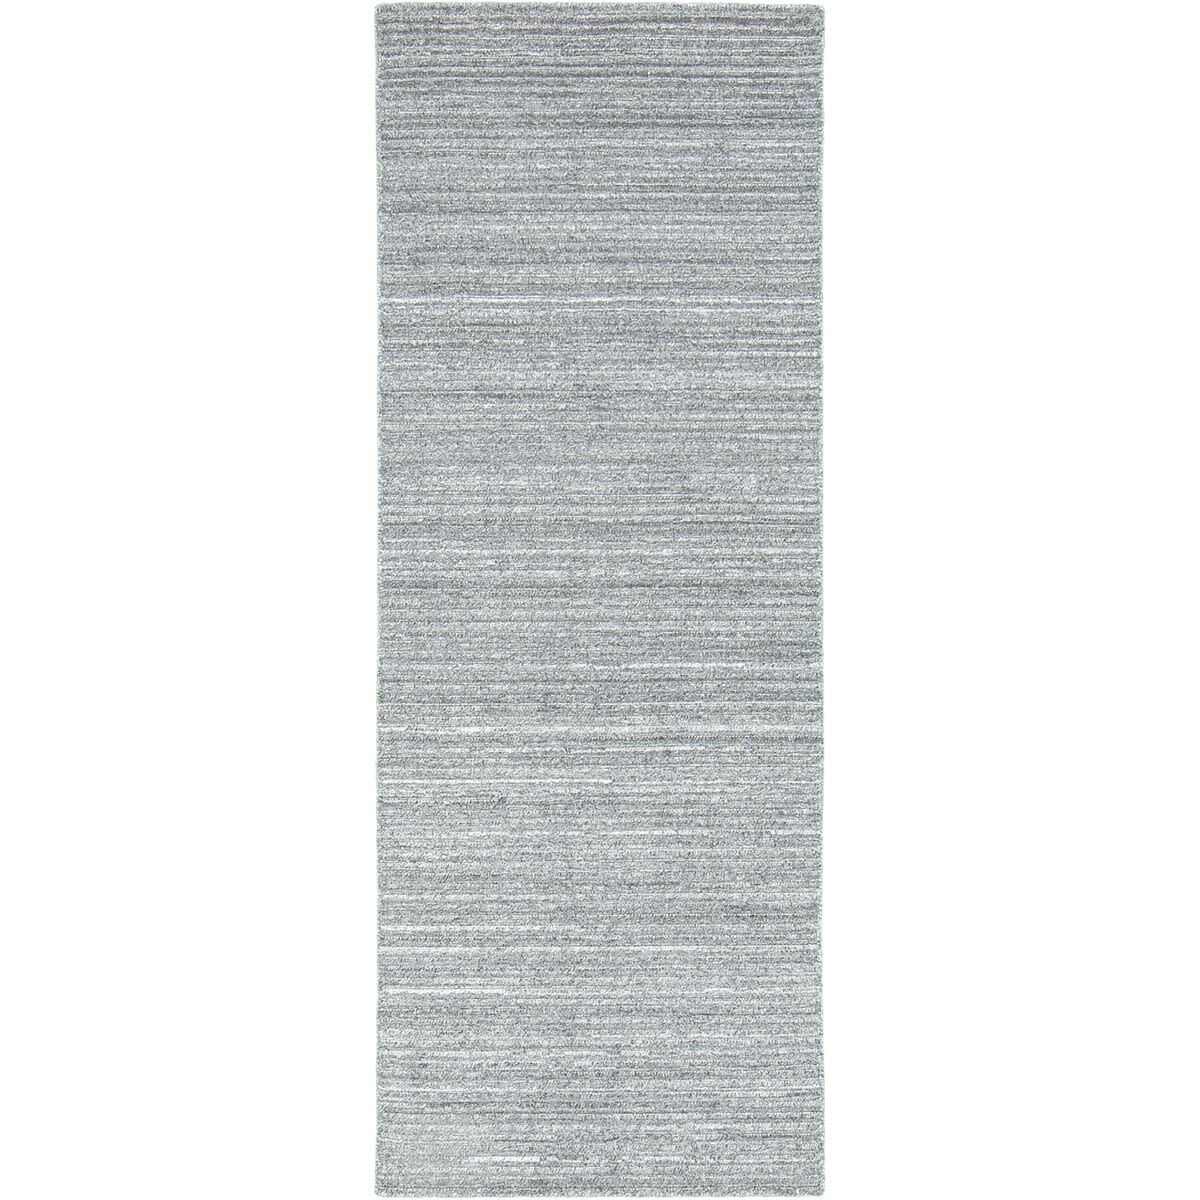 שטיח טוסקנה 04 אפור ראנר | השטיח האדום